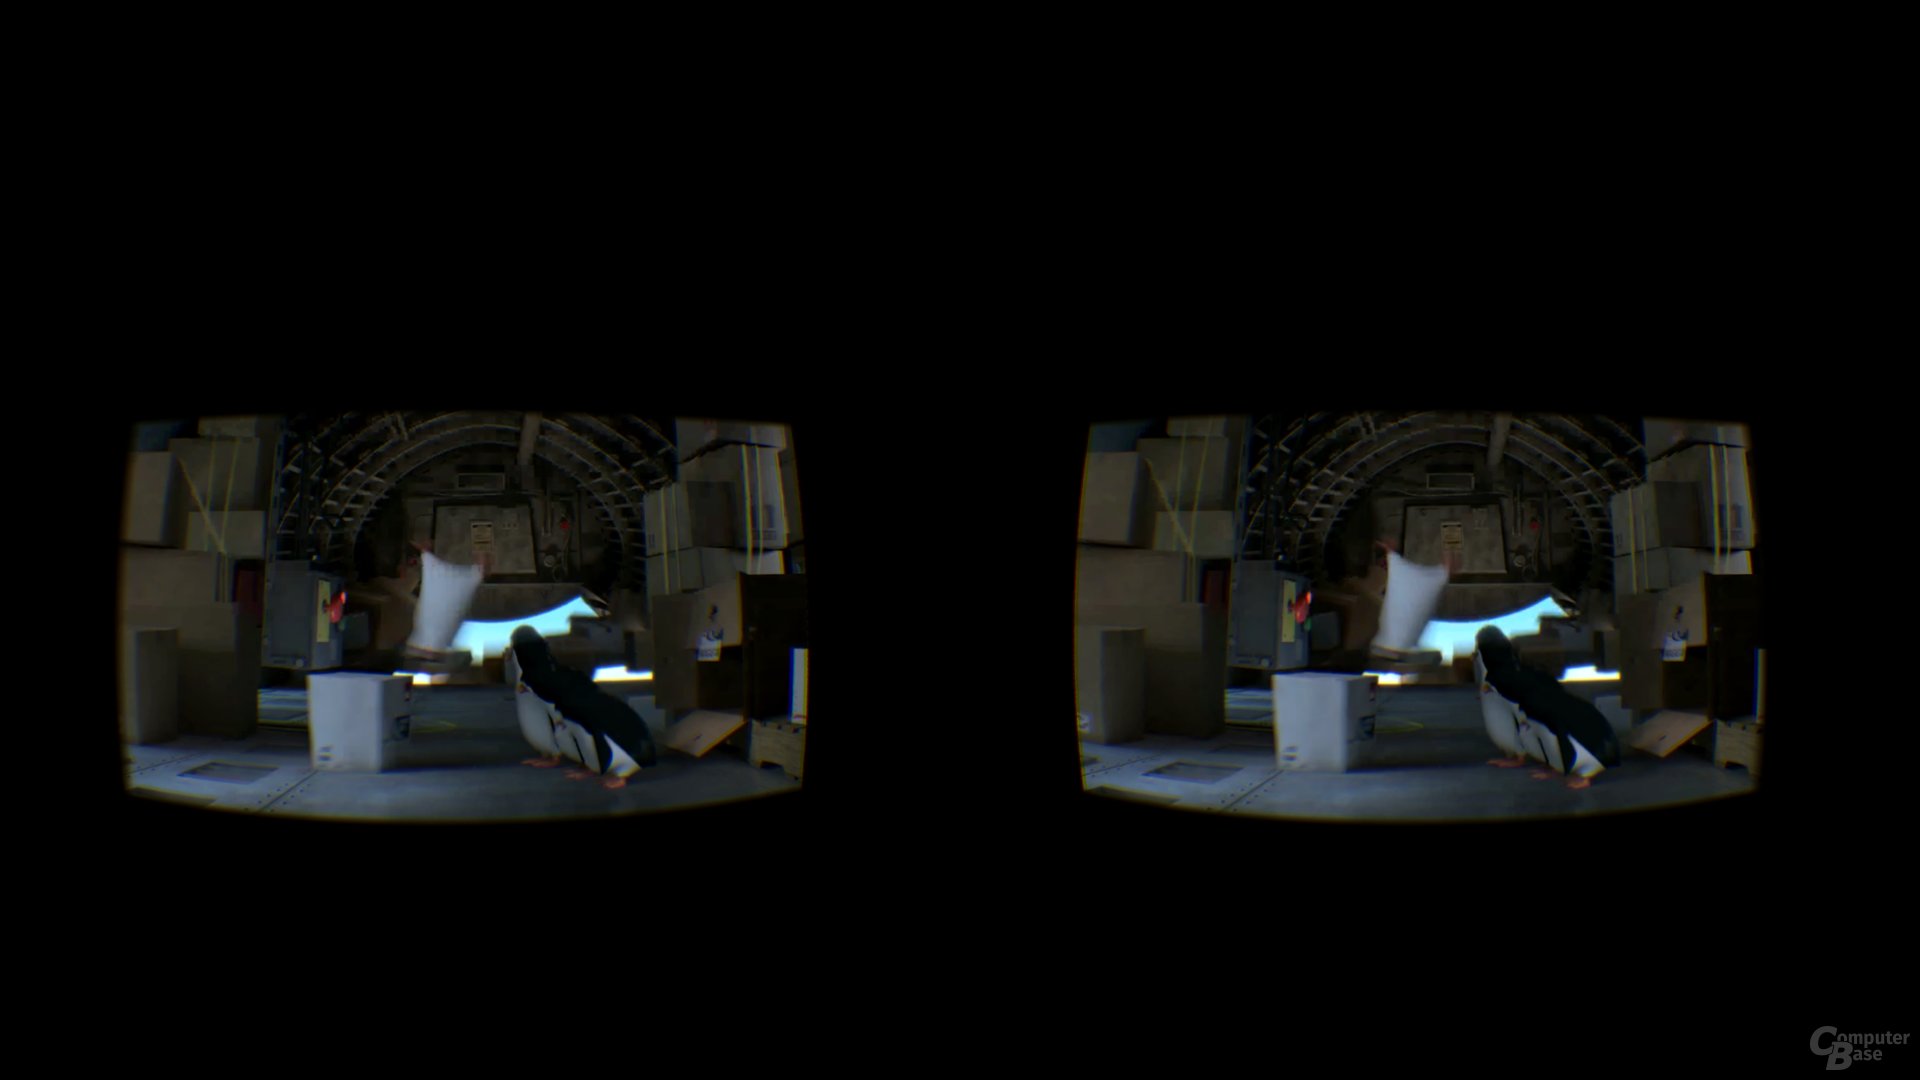 VR Gallery